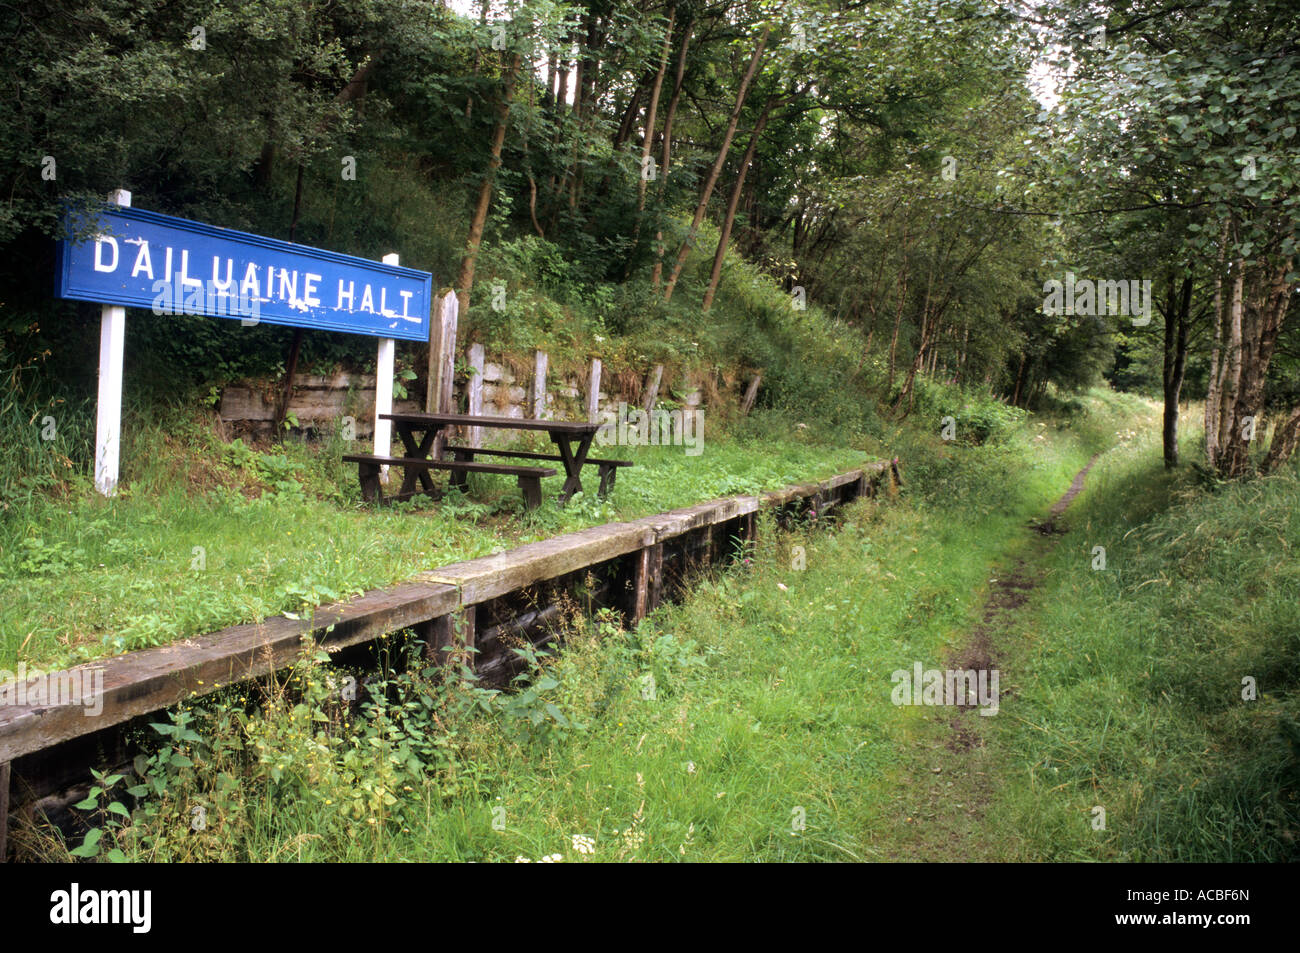 La plate-forme ferroviaire, abandonnés, désaffectées, couvert, arrêter de Dailuaine, région de Grampian, Écosse, Royaume-Uni, Scottish Railways Gare Banque D'Images